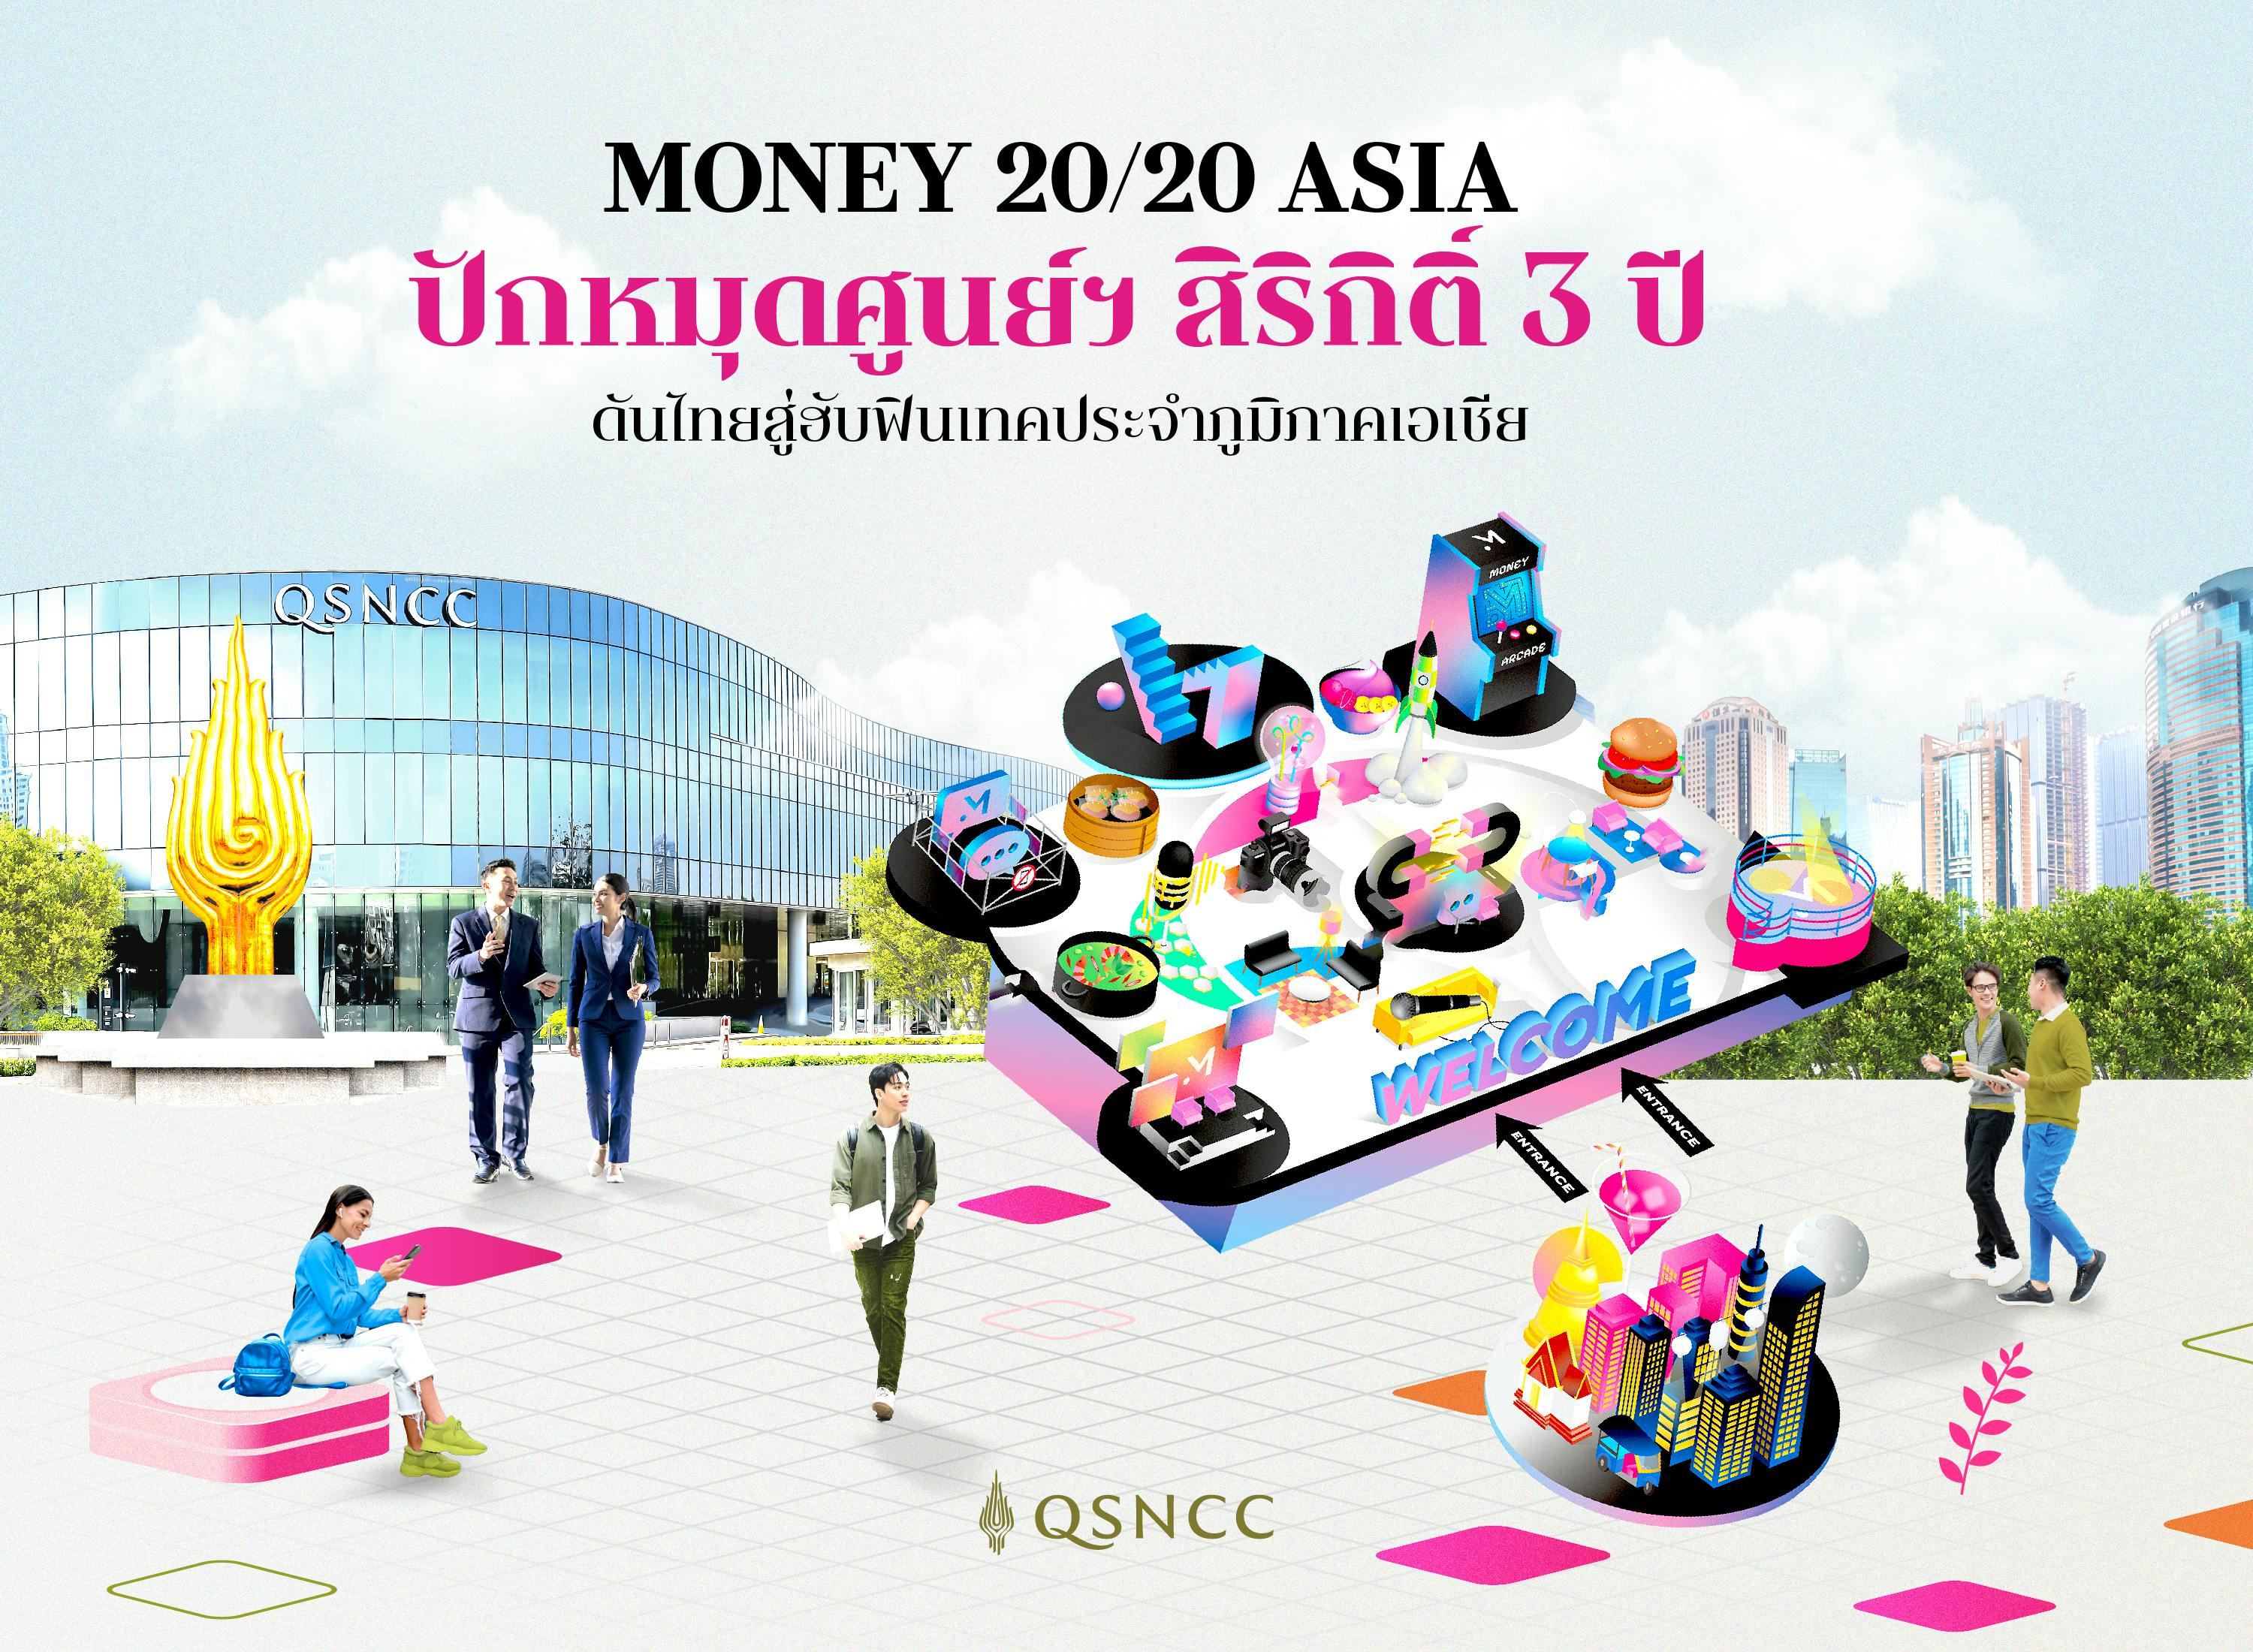 Money 20/20 Asia โชว์ฟินเทคระดับโลก ปักหมุดศูนย์ฯ สิริกิติ์ 3 ปี  ส่งเสริมไทยสู่ศูนย์กลางฟินเทคชั้นนำของเอเชีย